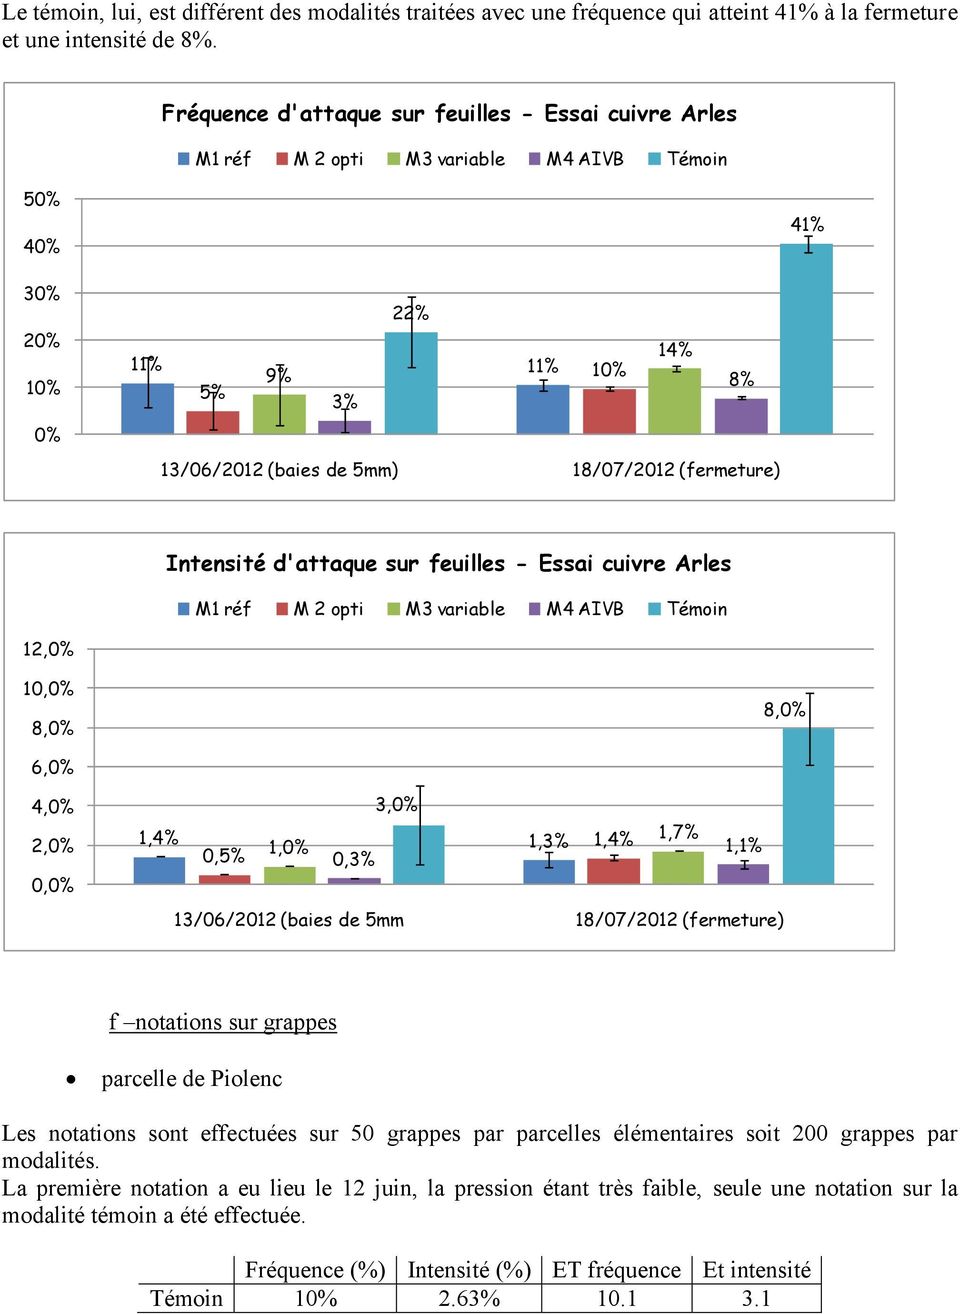 Intensité d'attaque sur feuilles - Essai cuivre Arles M1 réf M 2 opti M3 variable M4 AIVB Témoin 12,% 1,% 8,% 8,% 6,% 4,% 2,%,% 3,% 1,4% 1,3% 1,4% 1,7%,5% 1,% 1,1%,3% 13/6/212 (baies de 5mm 18/7/212